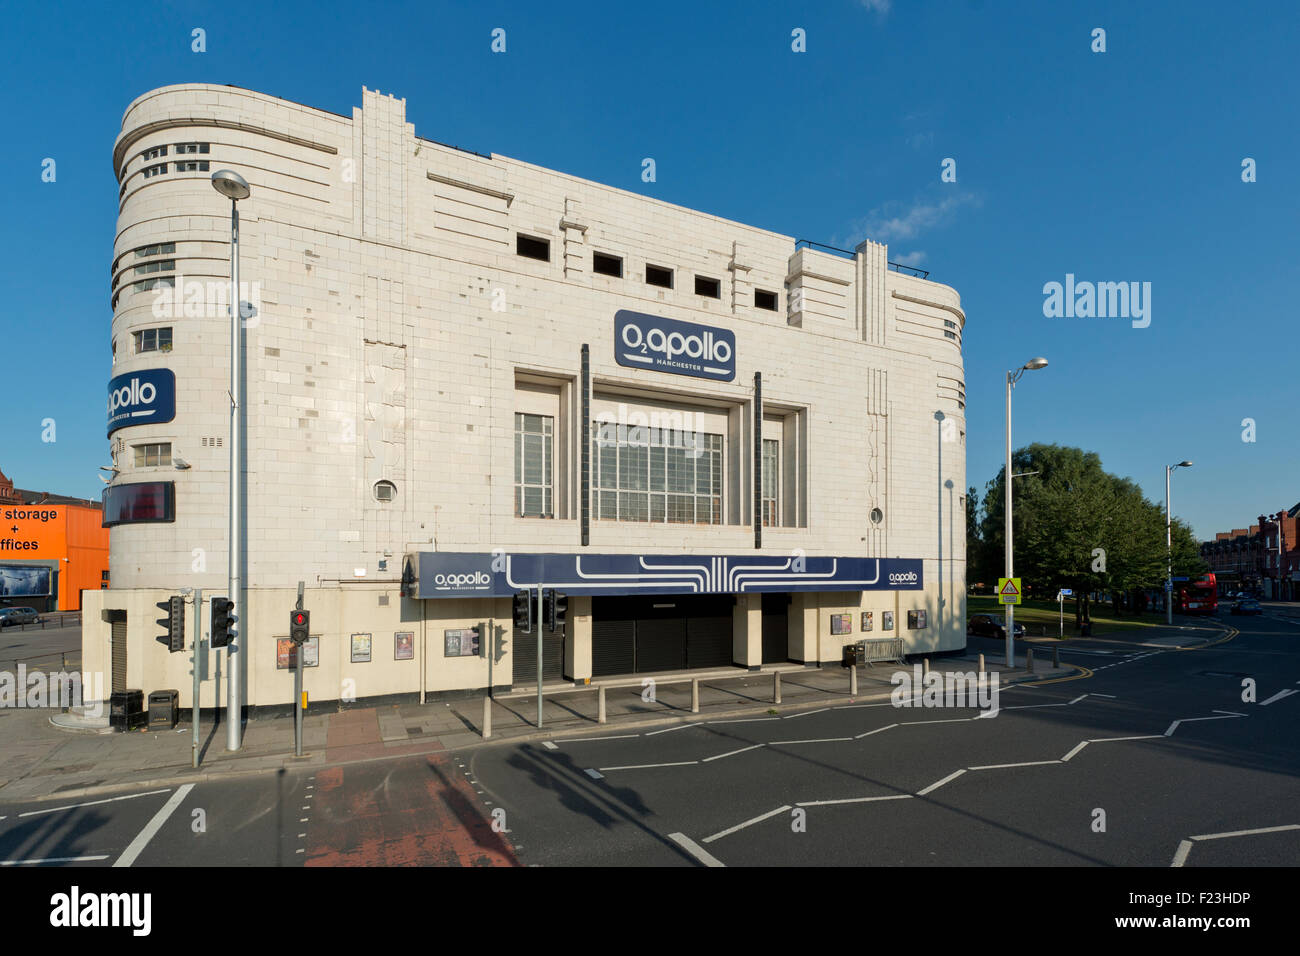 La salle de concerts O2 Apollo sur Stockport Road, Ardwick Green, à Manchester (usage éditorial uniquement). Banque D'Images